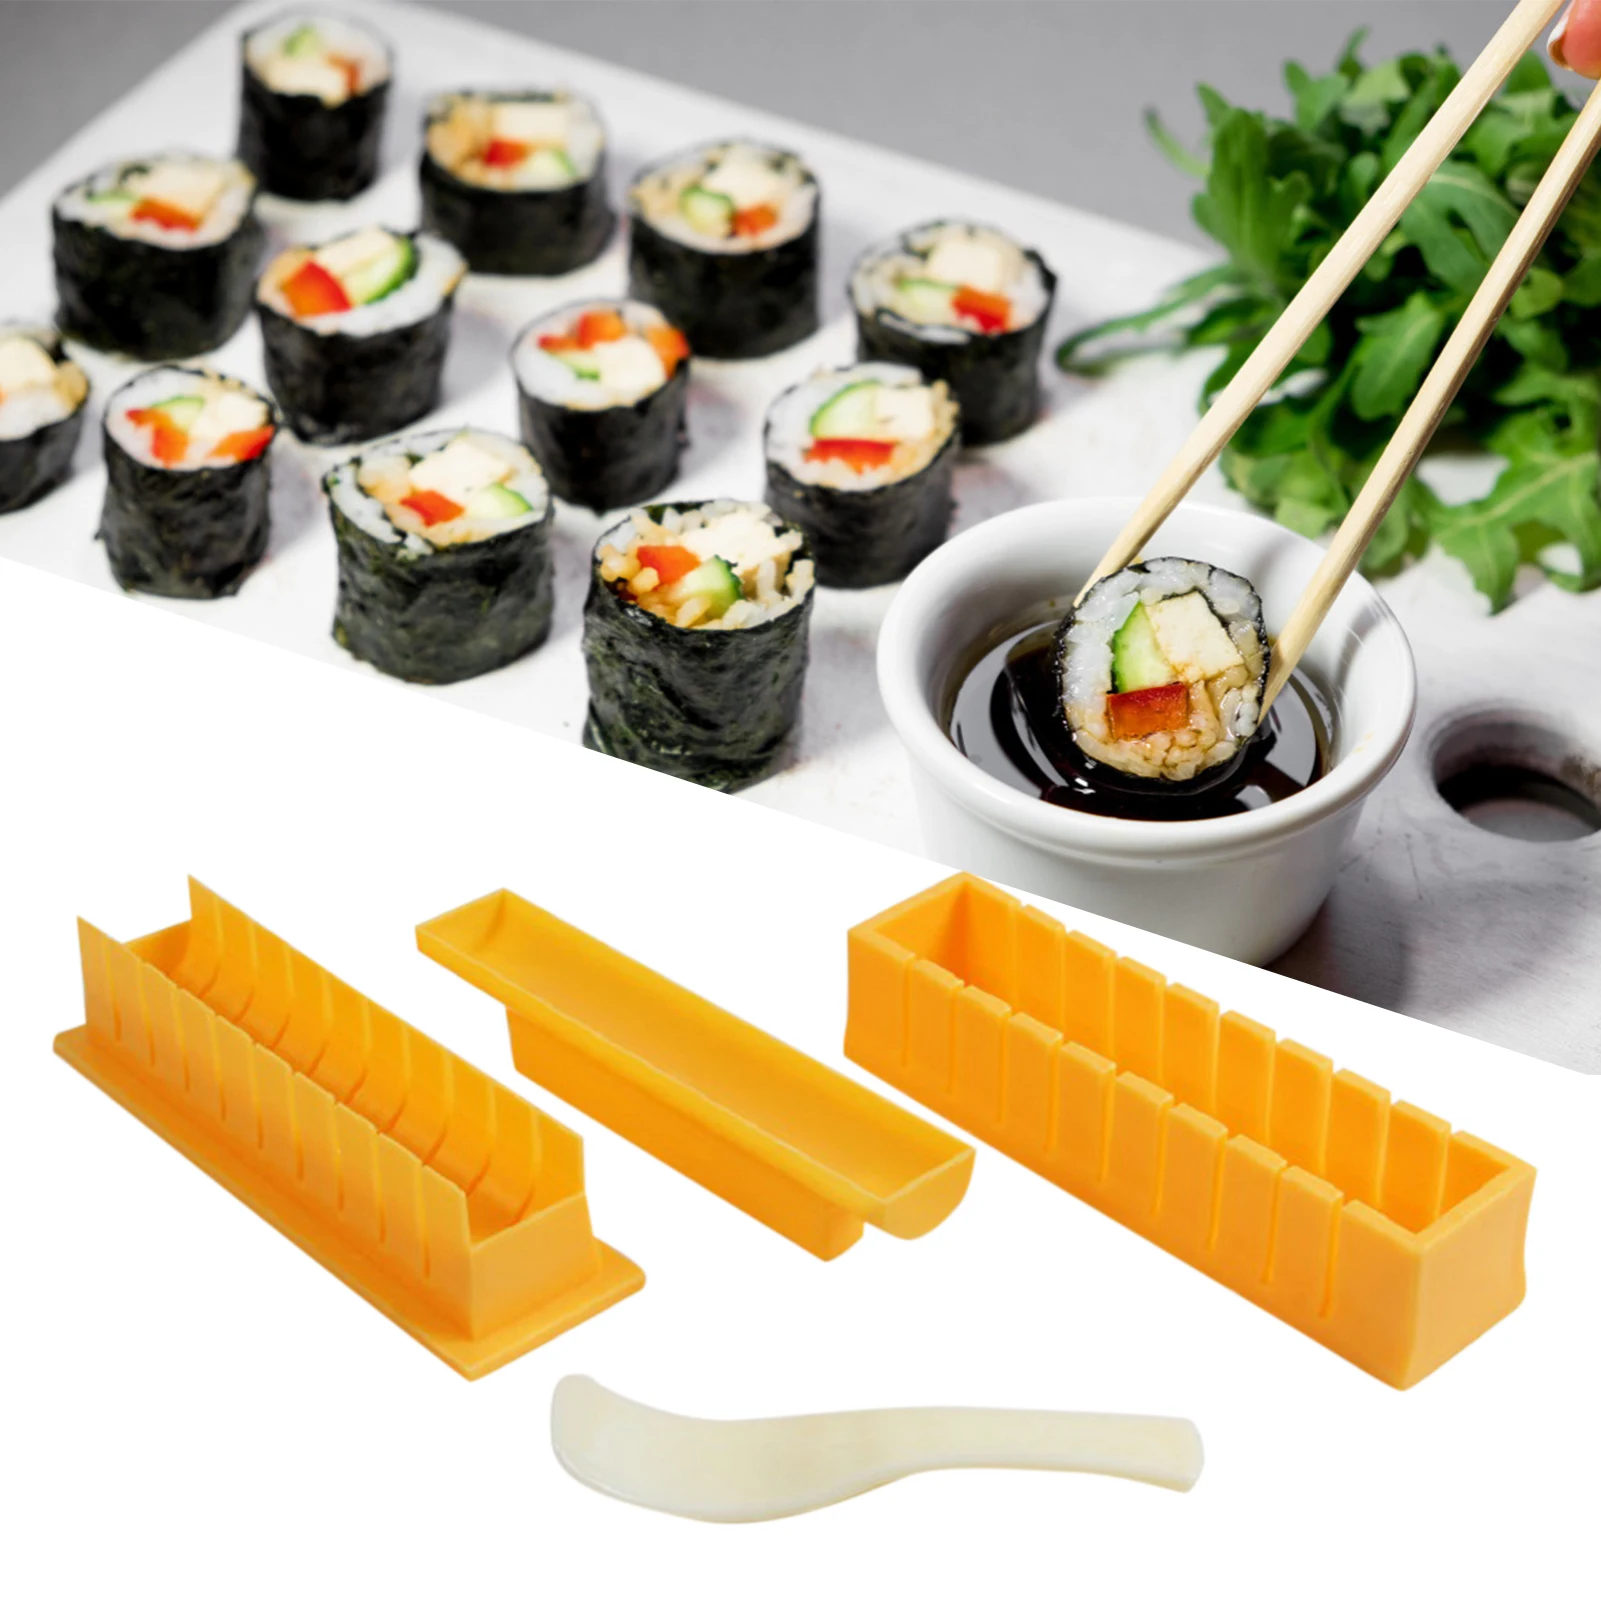 Как пользоваться набор для суши и роллов фото 82